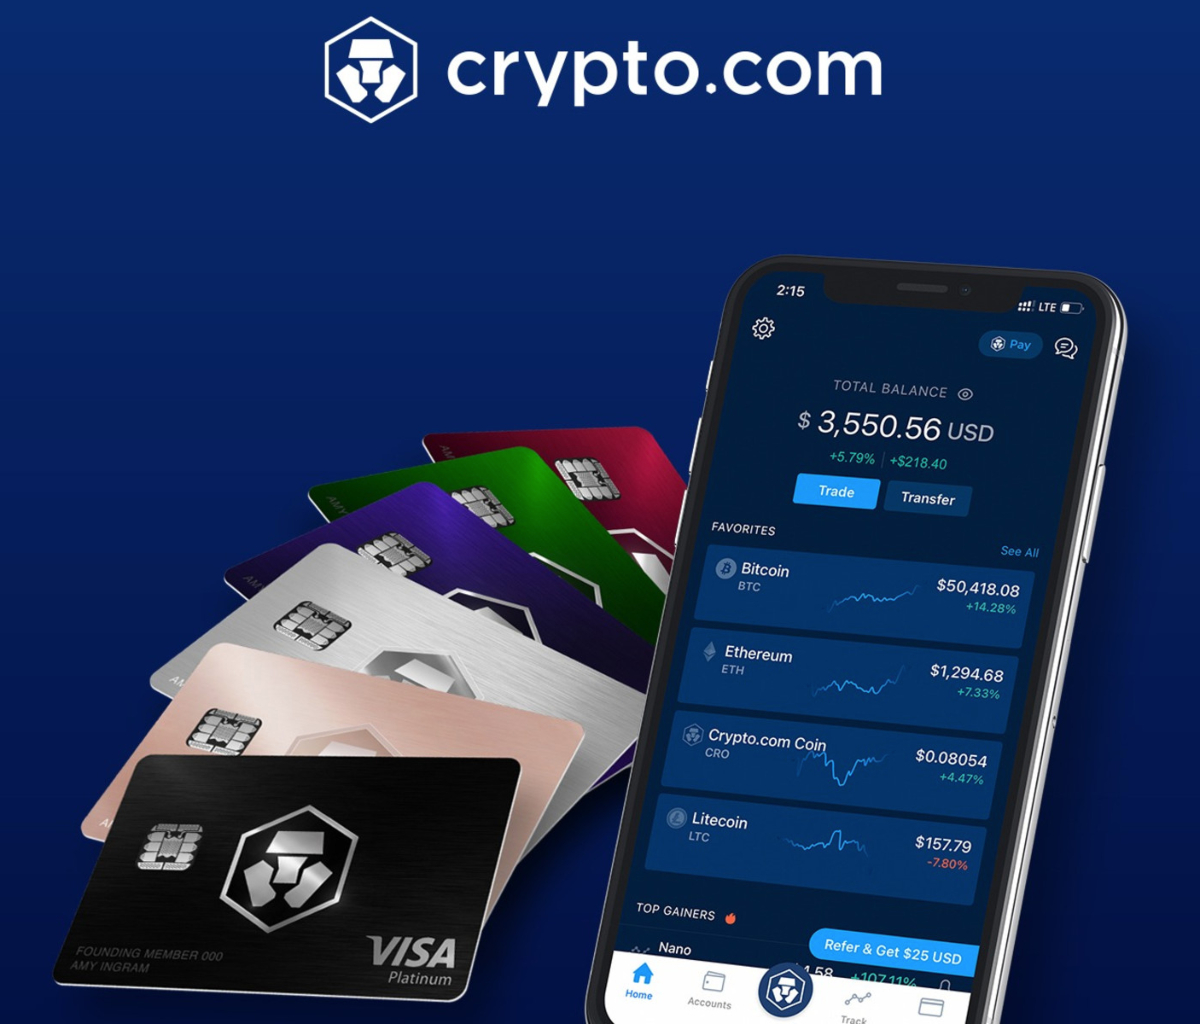 can crypto.com coin reach 1 dollar